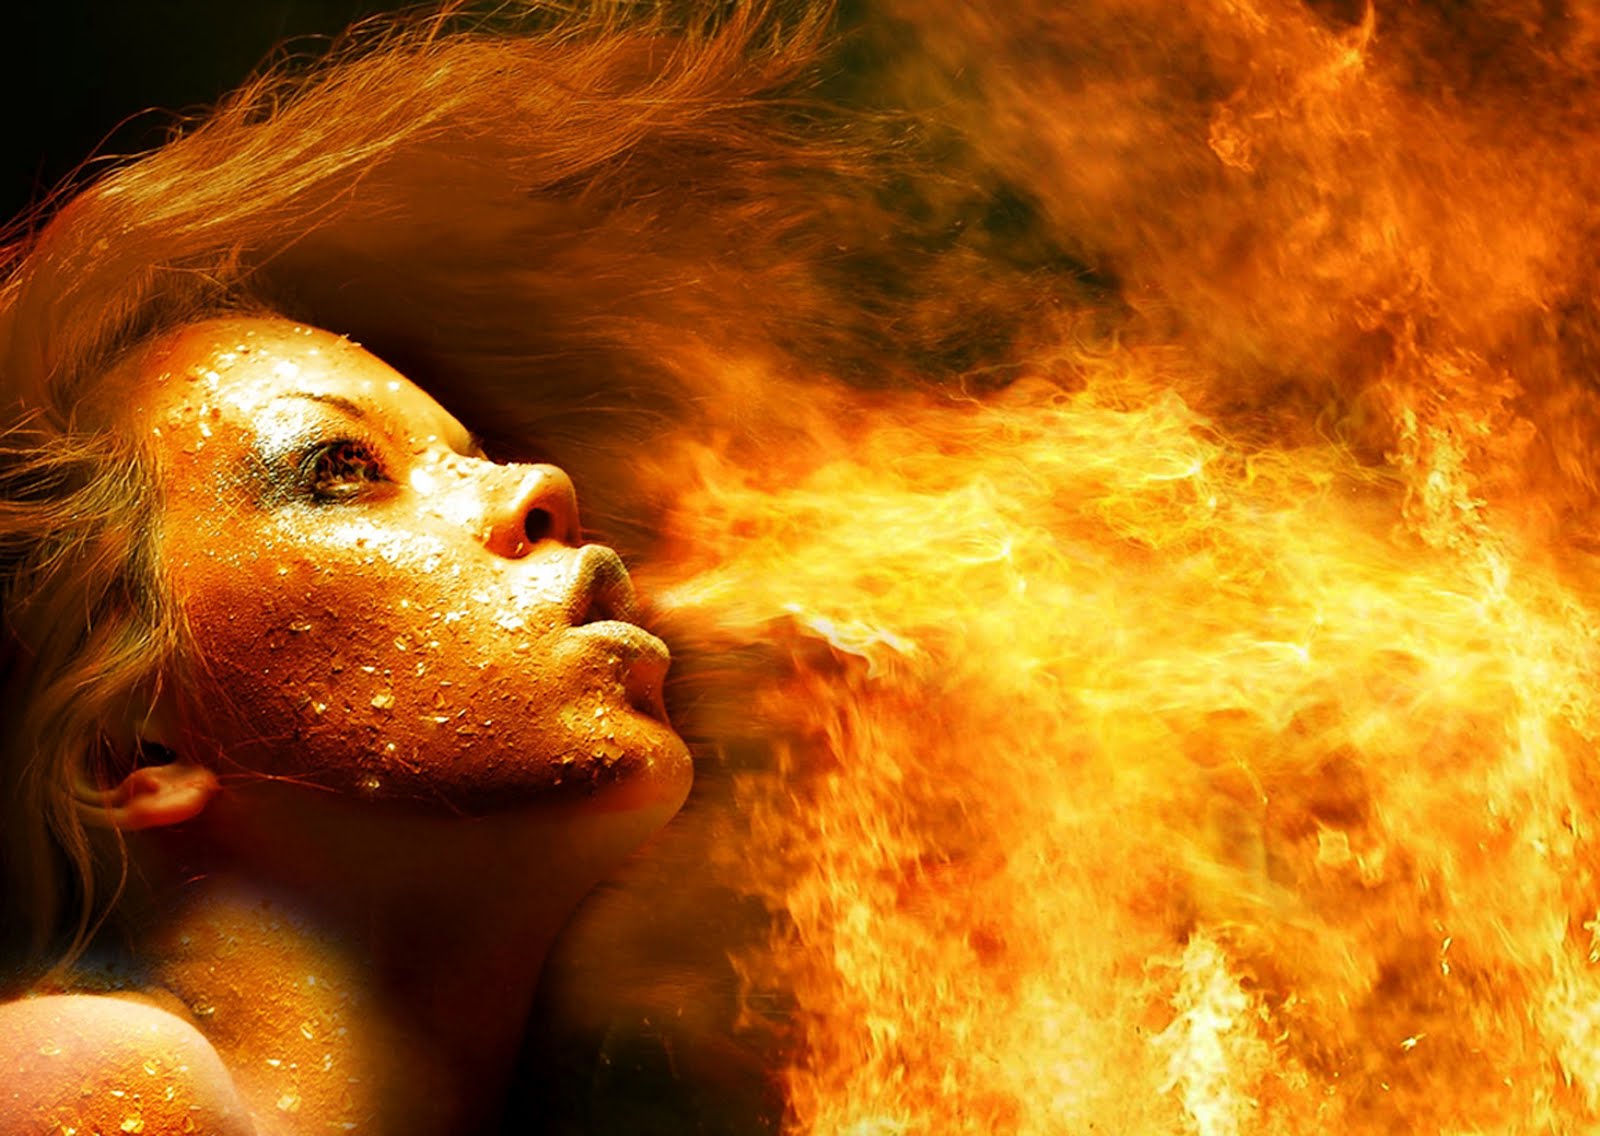 http://4.bp.blogspot.com/-1QshuRv_CGI/T0466kSlevI/AAAAAAAAUuY/H9GjdPeHAvE/s1600/Flames-Fire-Wallpaper-Background.jpg